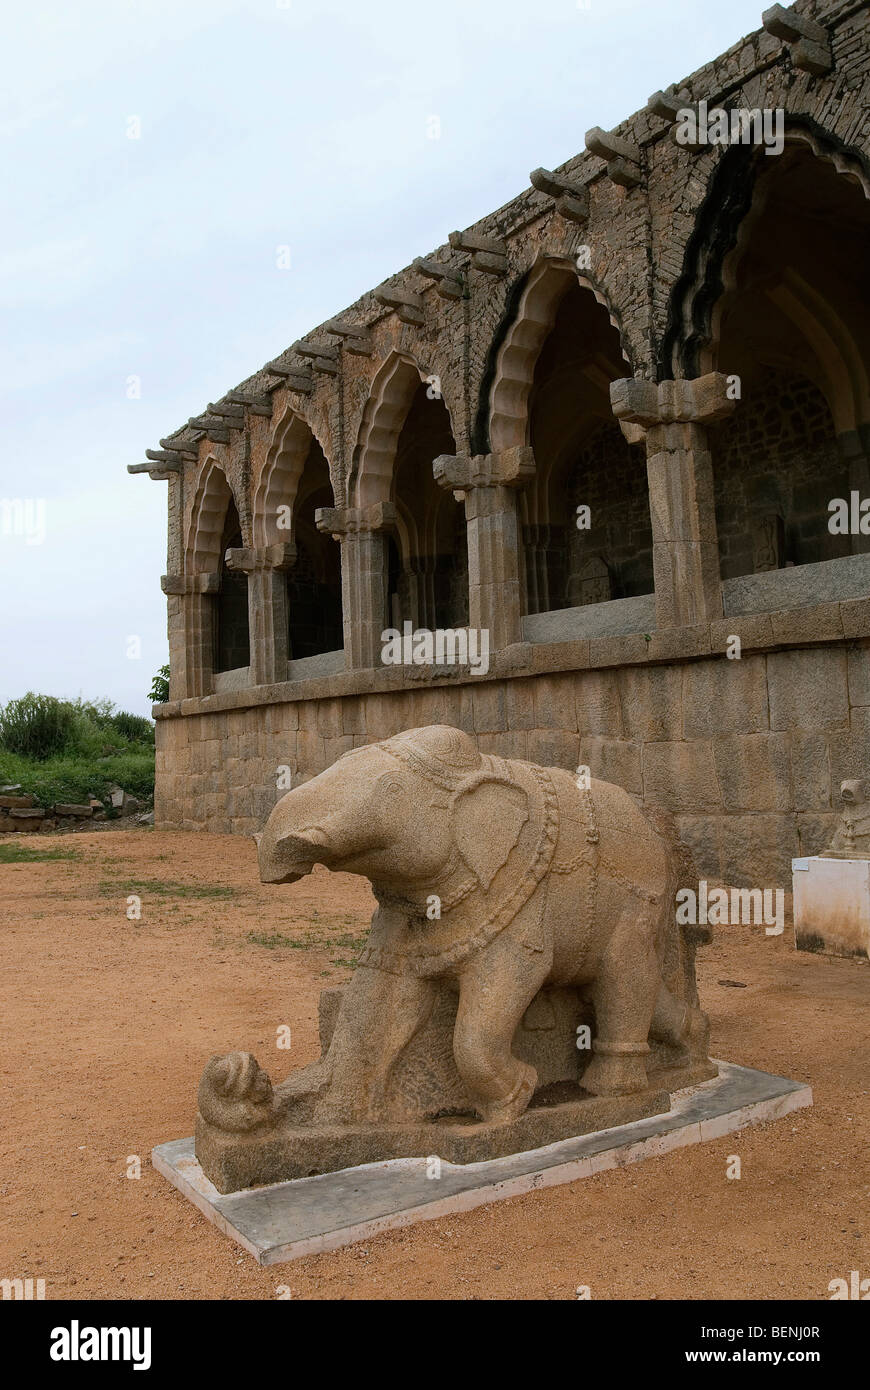 Guards' Quarters near Elephant stables in Hampi Karnataka India Stock Photo